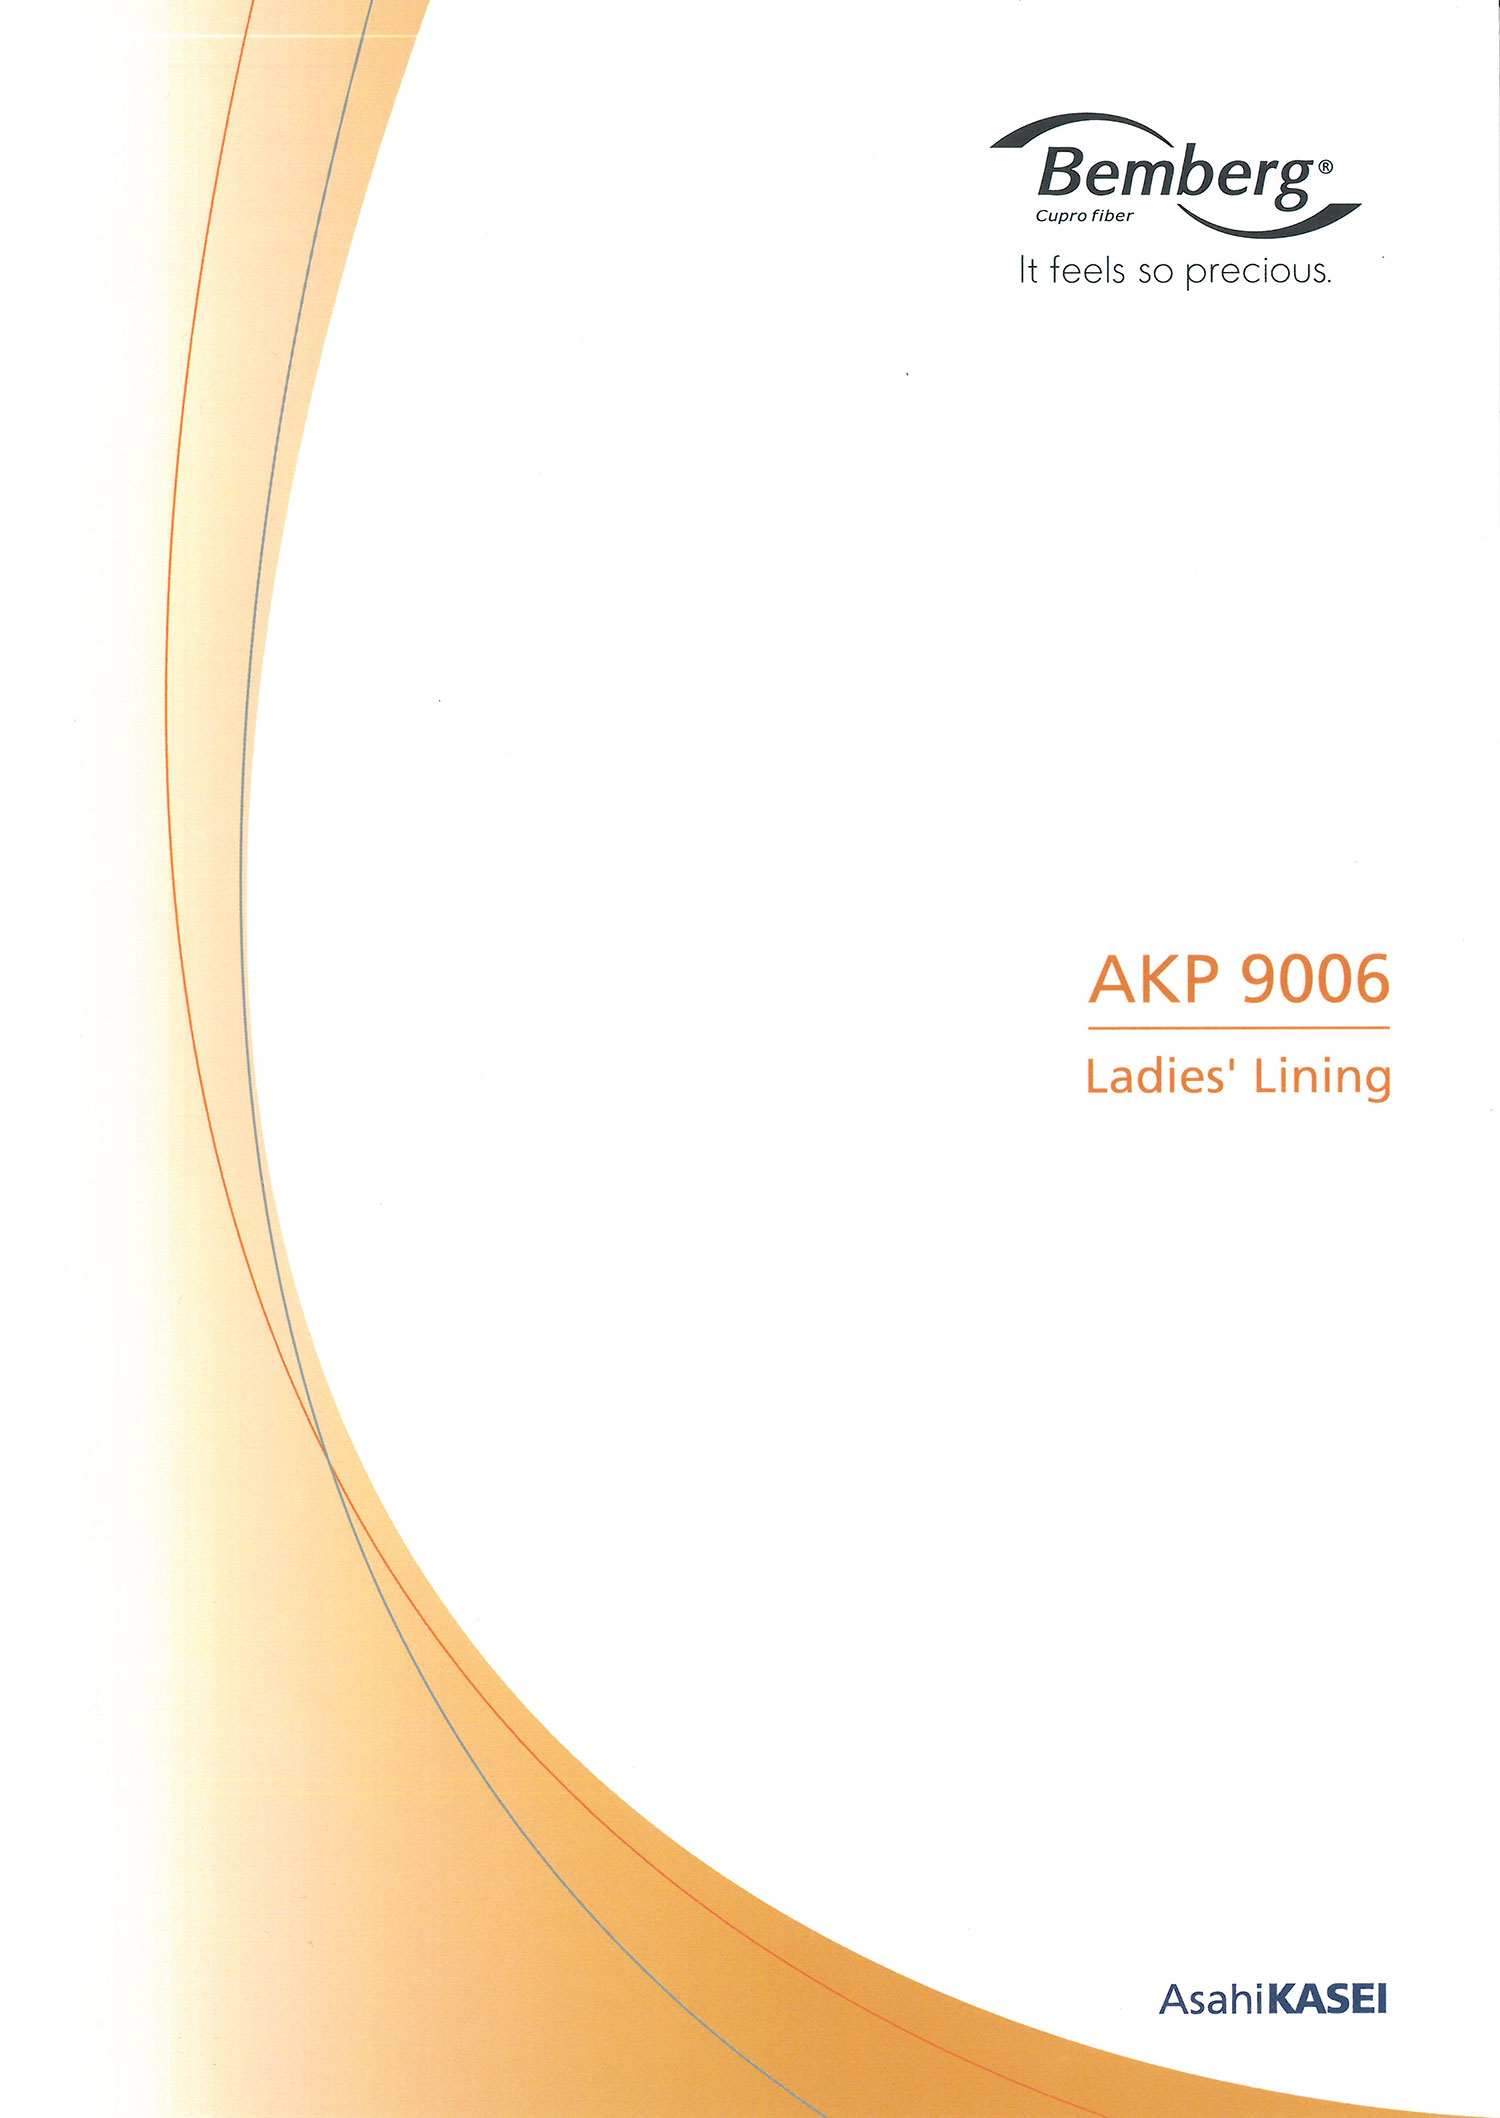 AKP9006 Bemberg Fodera Lagujour[Liner] Asahi KASEI